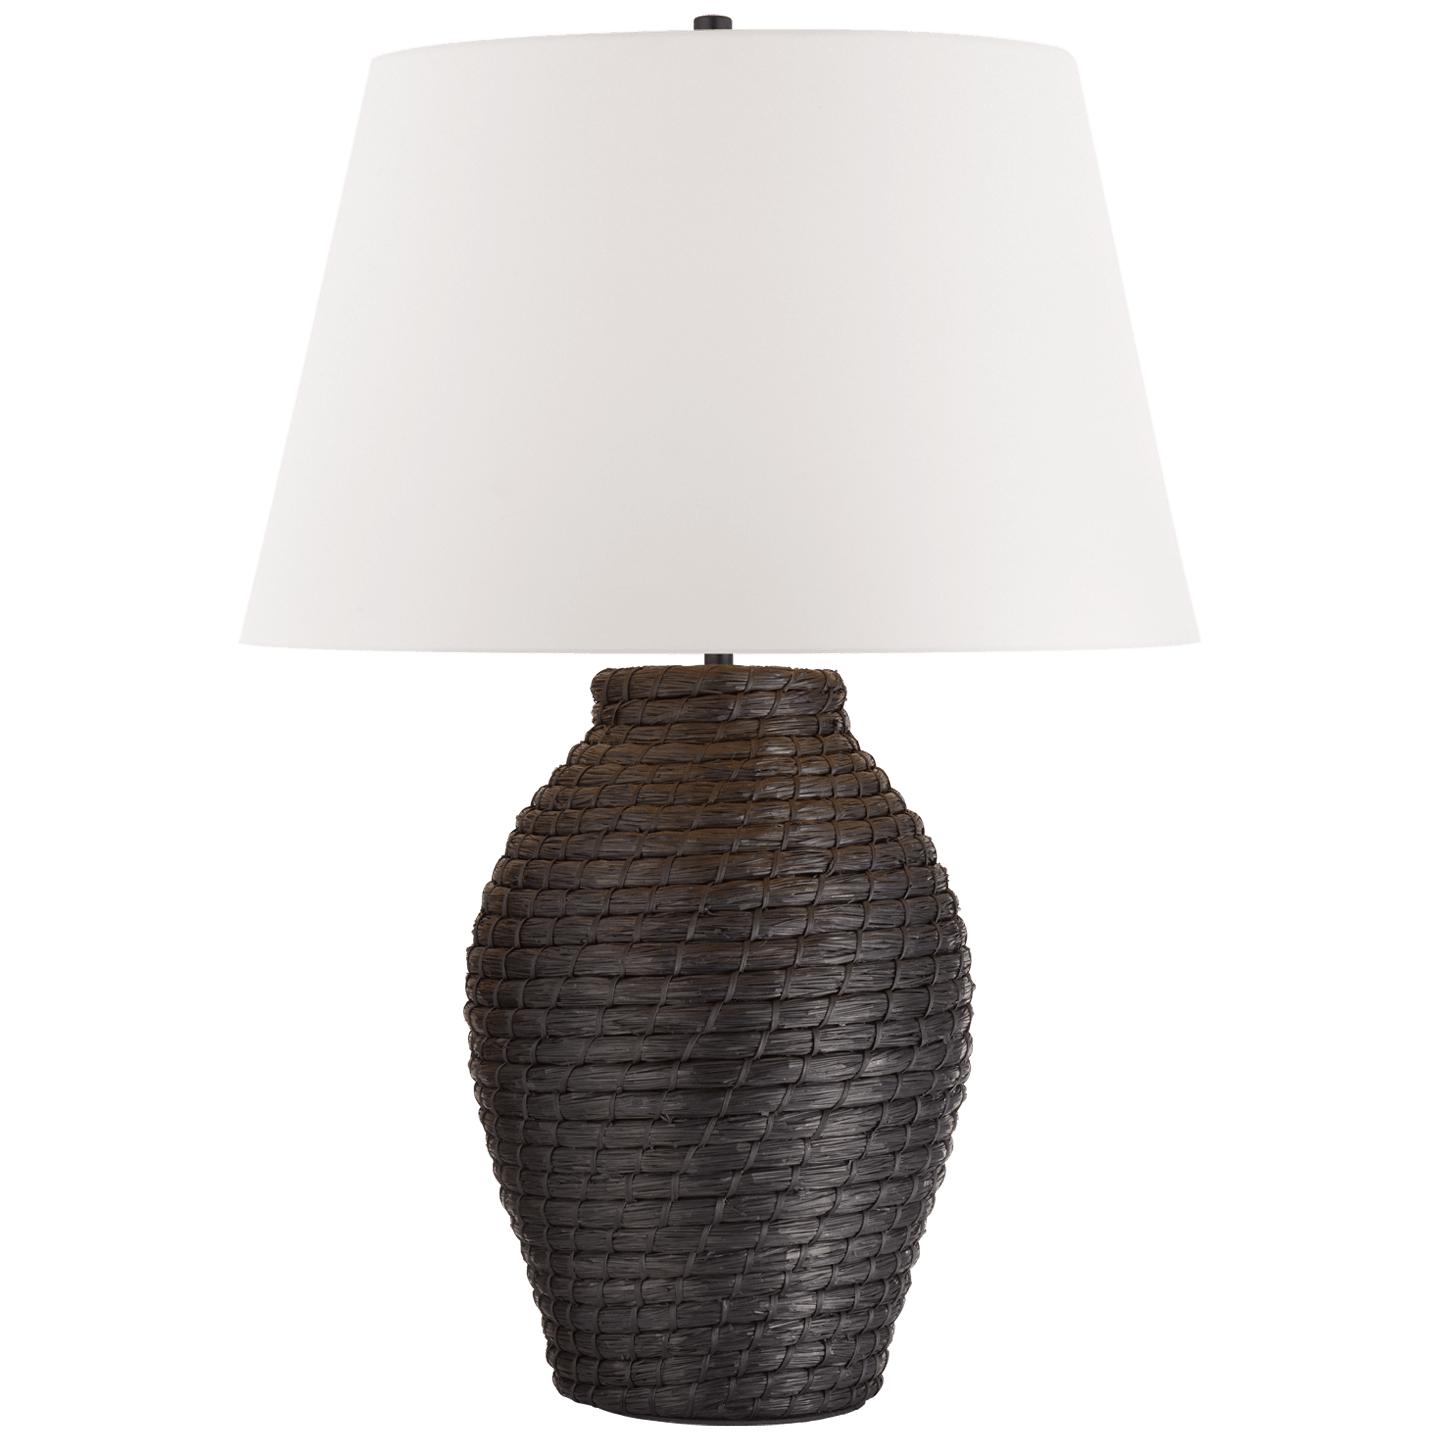 Купить Настольная лампа Lohan Large Table Lamp в интернет-магазине roooms.ru